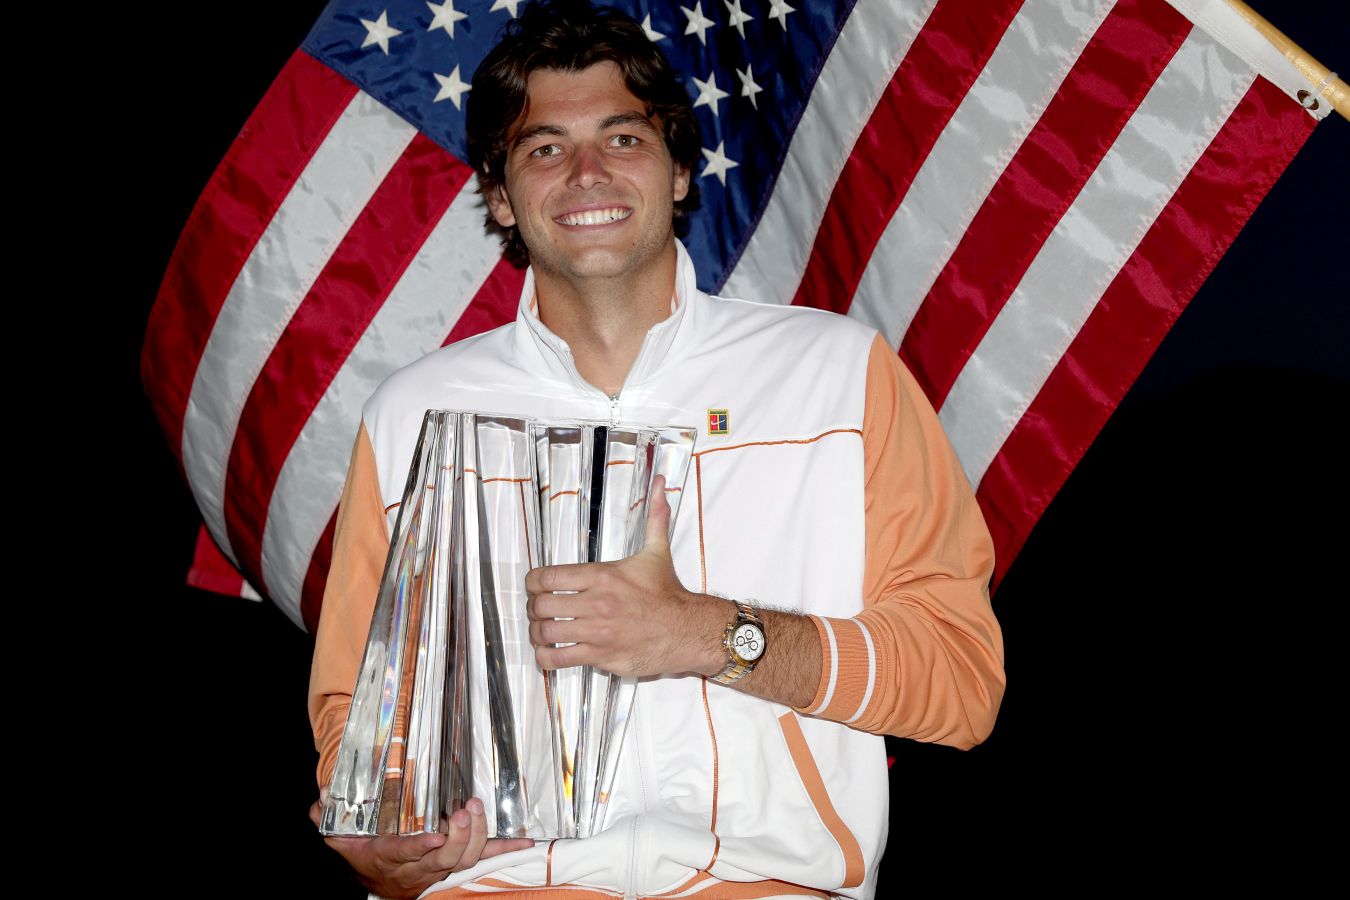 Турниры «Мастерс» в Индиан-Уэллсе и Майами: какие теннисисты побеждали, Федерер, Надаль, Джокович, Давыденко, рейтинг